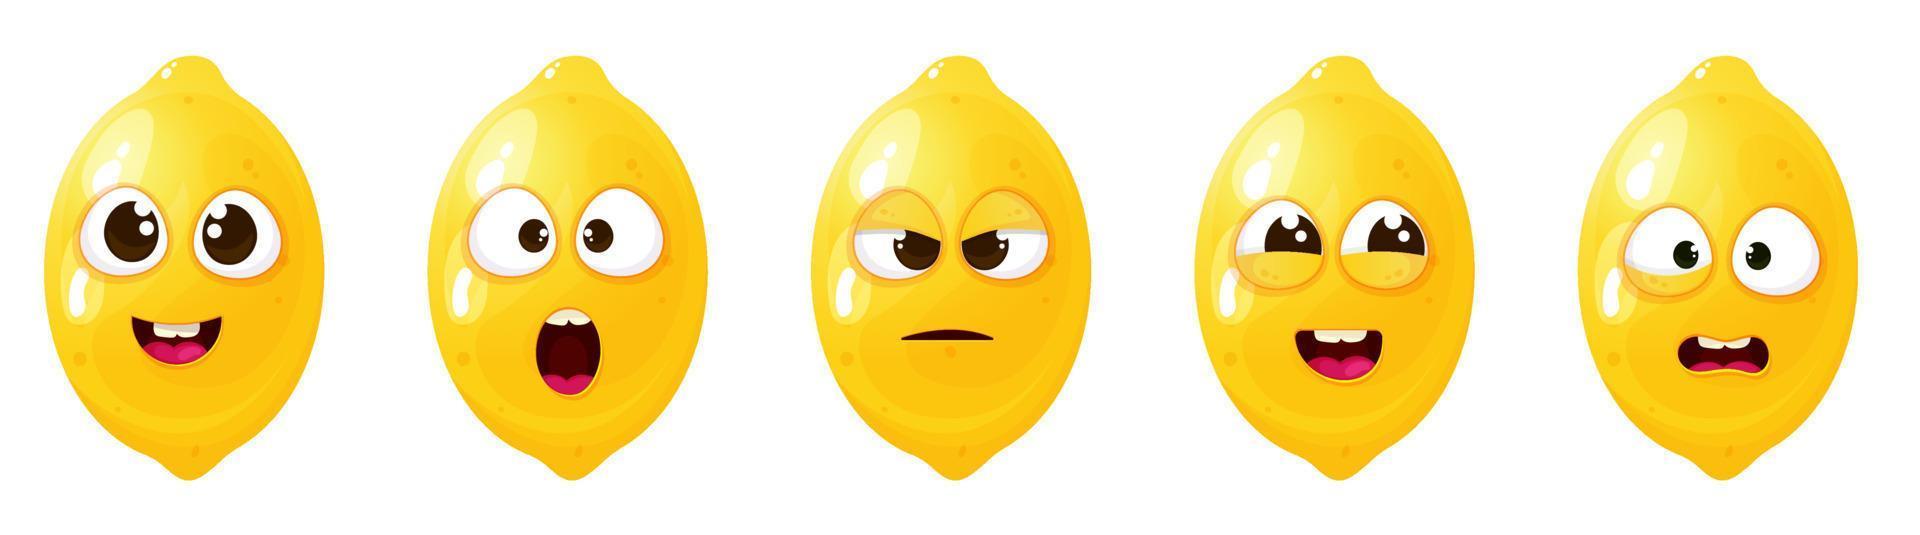 grappig schattig citroen reeks met verschillend emotie gezicht. vector